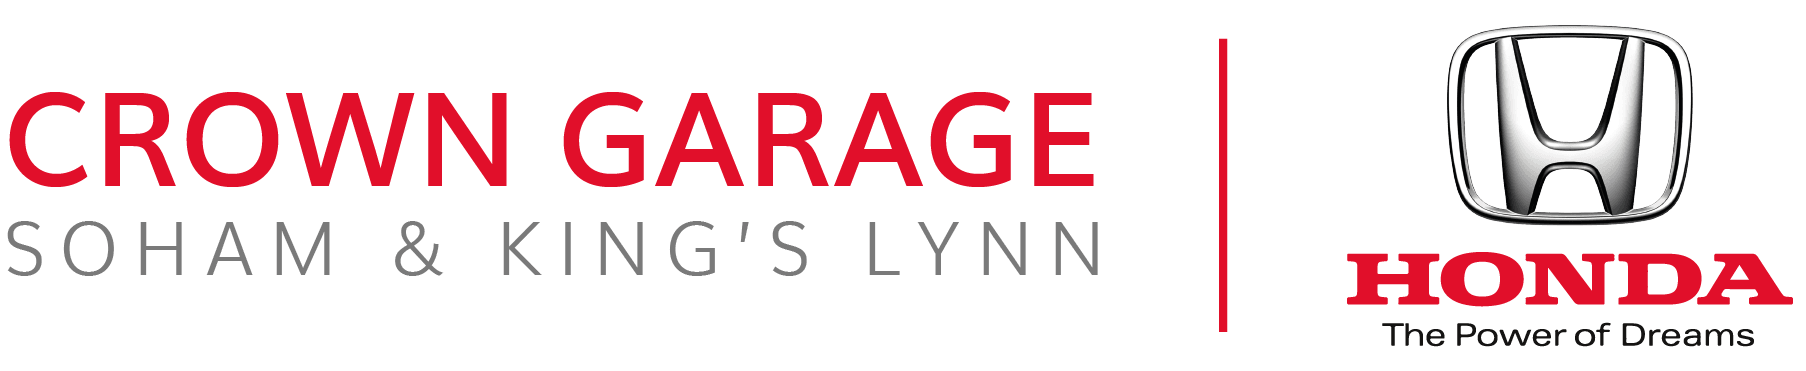 Crown Garage Honda | Honda Dealership Soham & King's Lynn